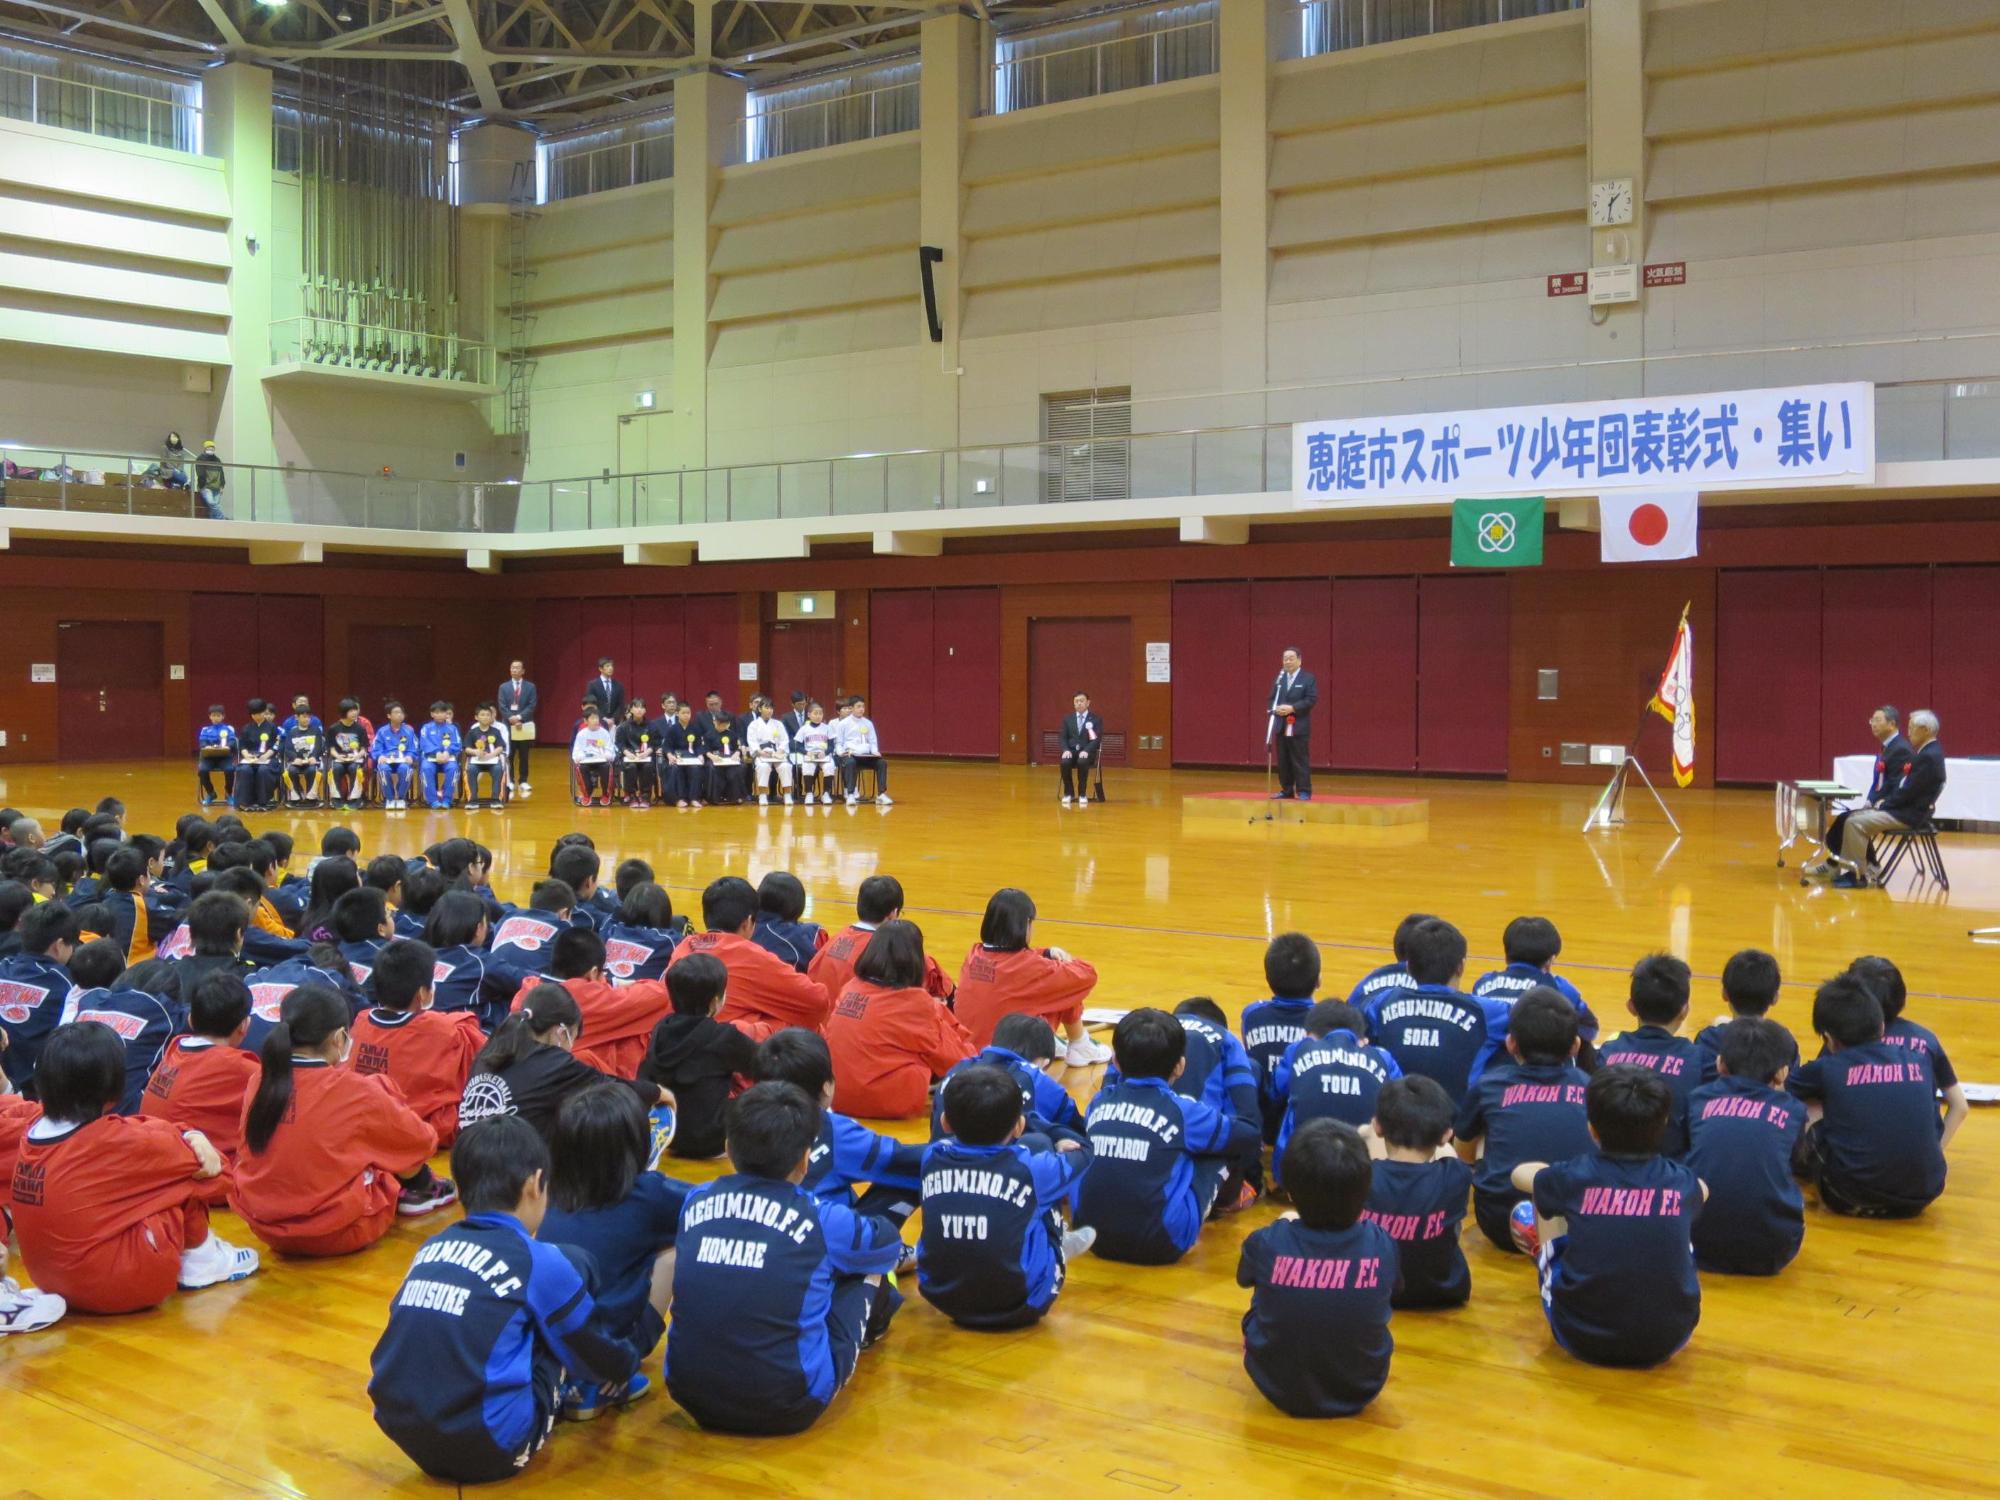 「恵庭市スポーツ少年団表彰式」にて挨拶をしている原田市長の写真